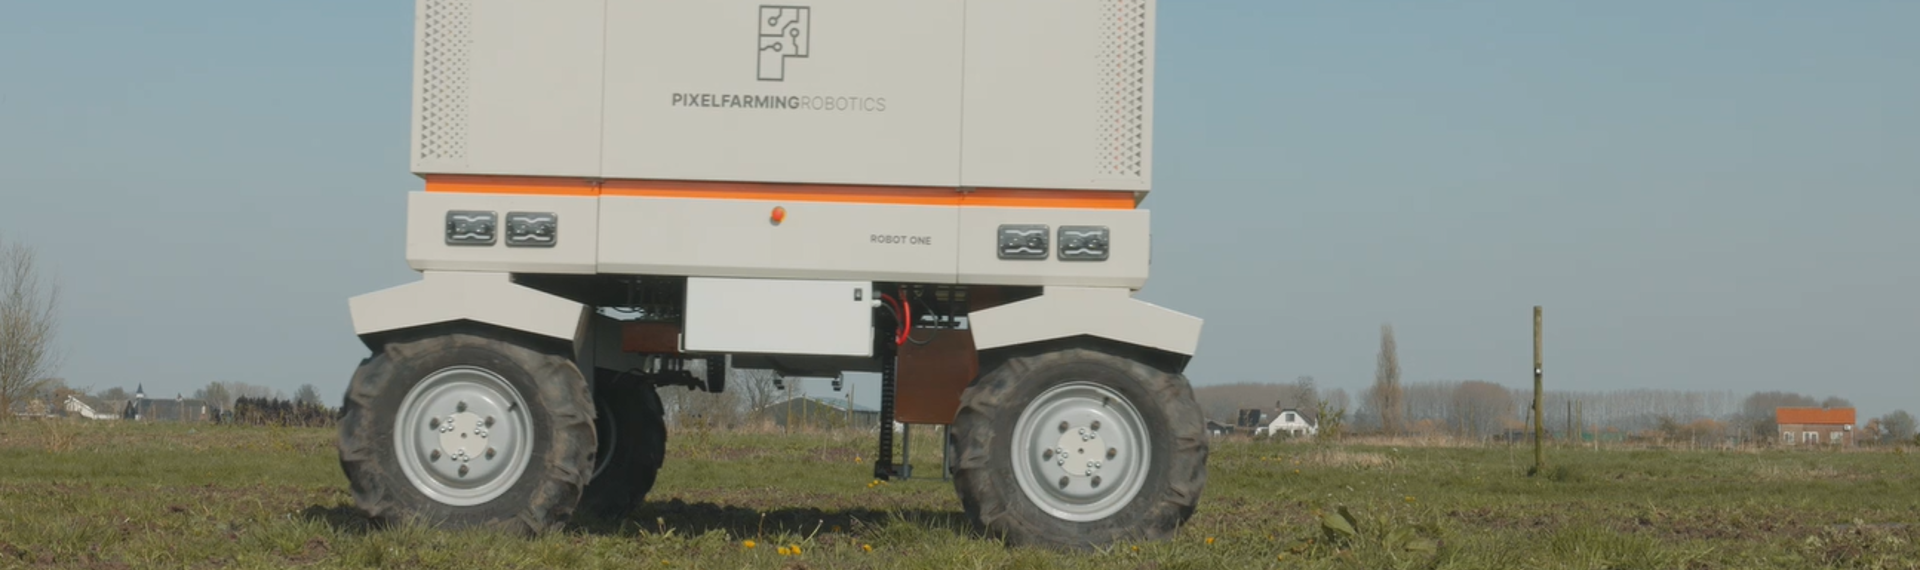 Pixelfarming: de landbouwrobot van de toekomst